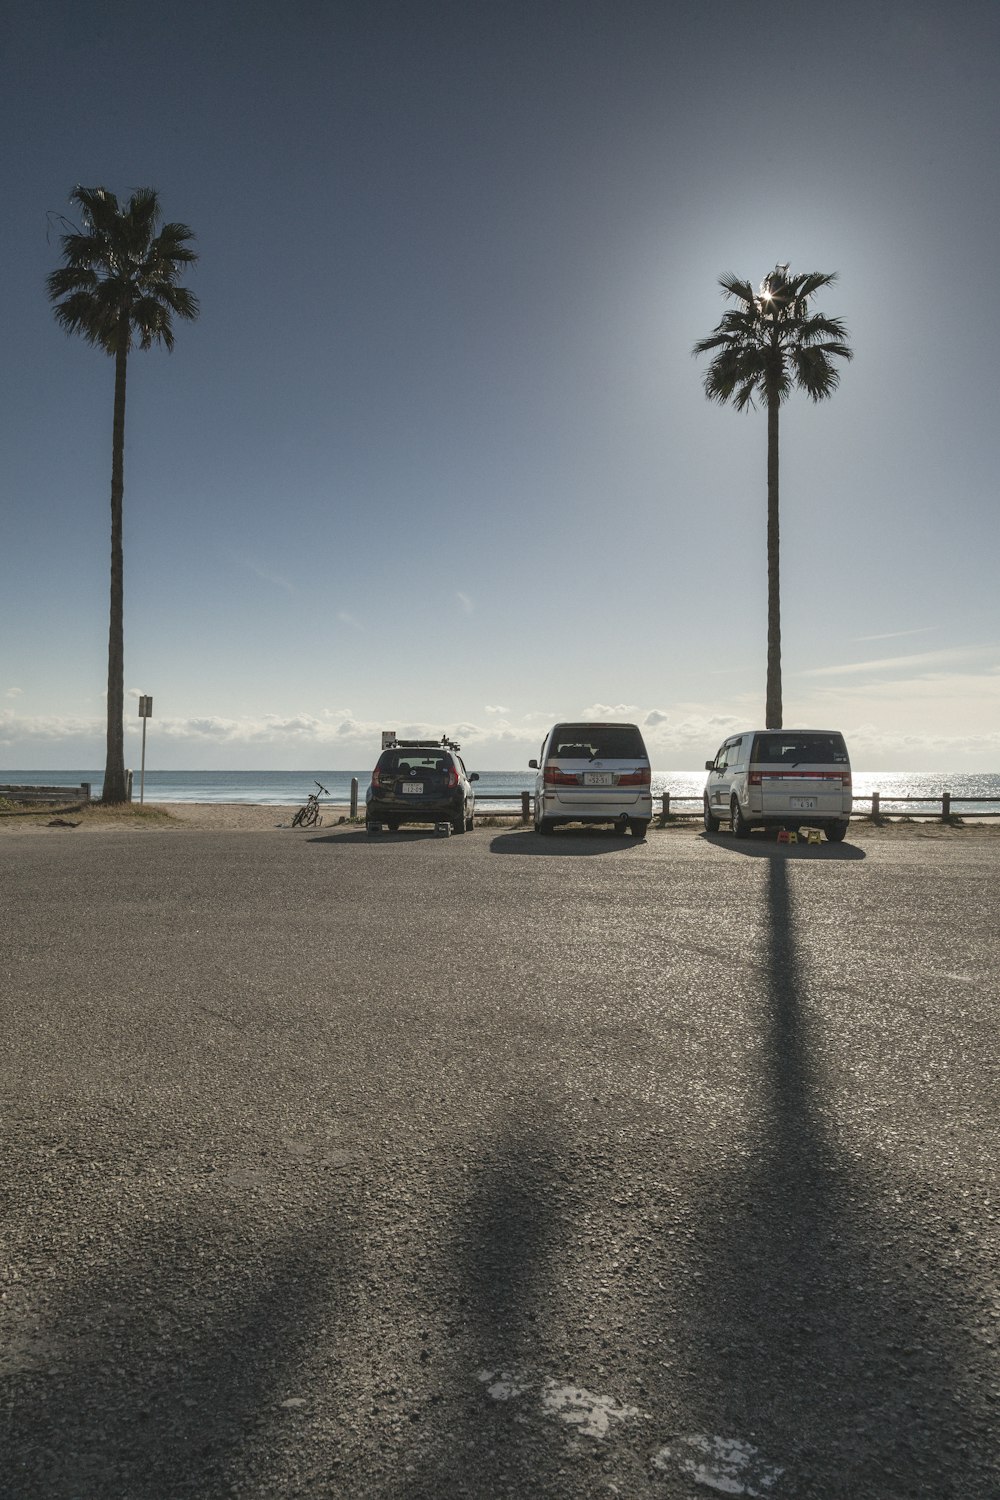 Três vans estacionadas em um estacionamento ao lado de palmeiras